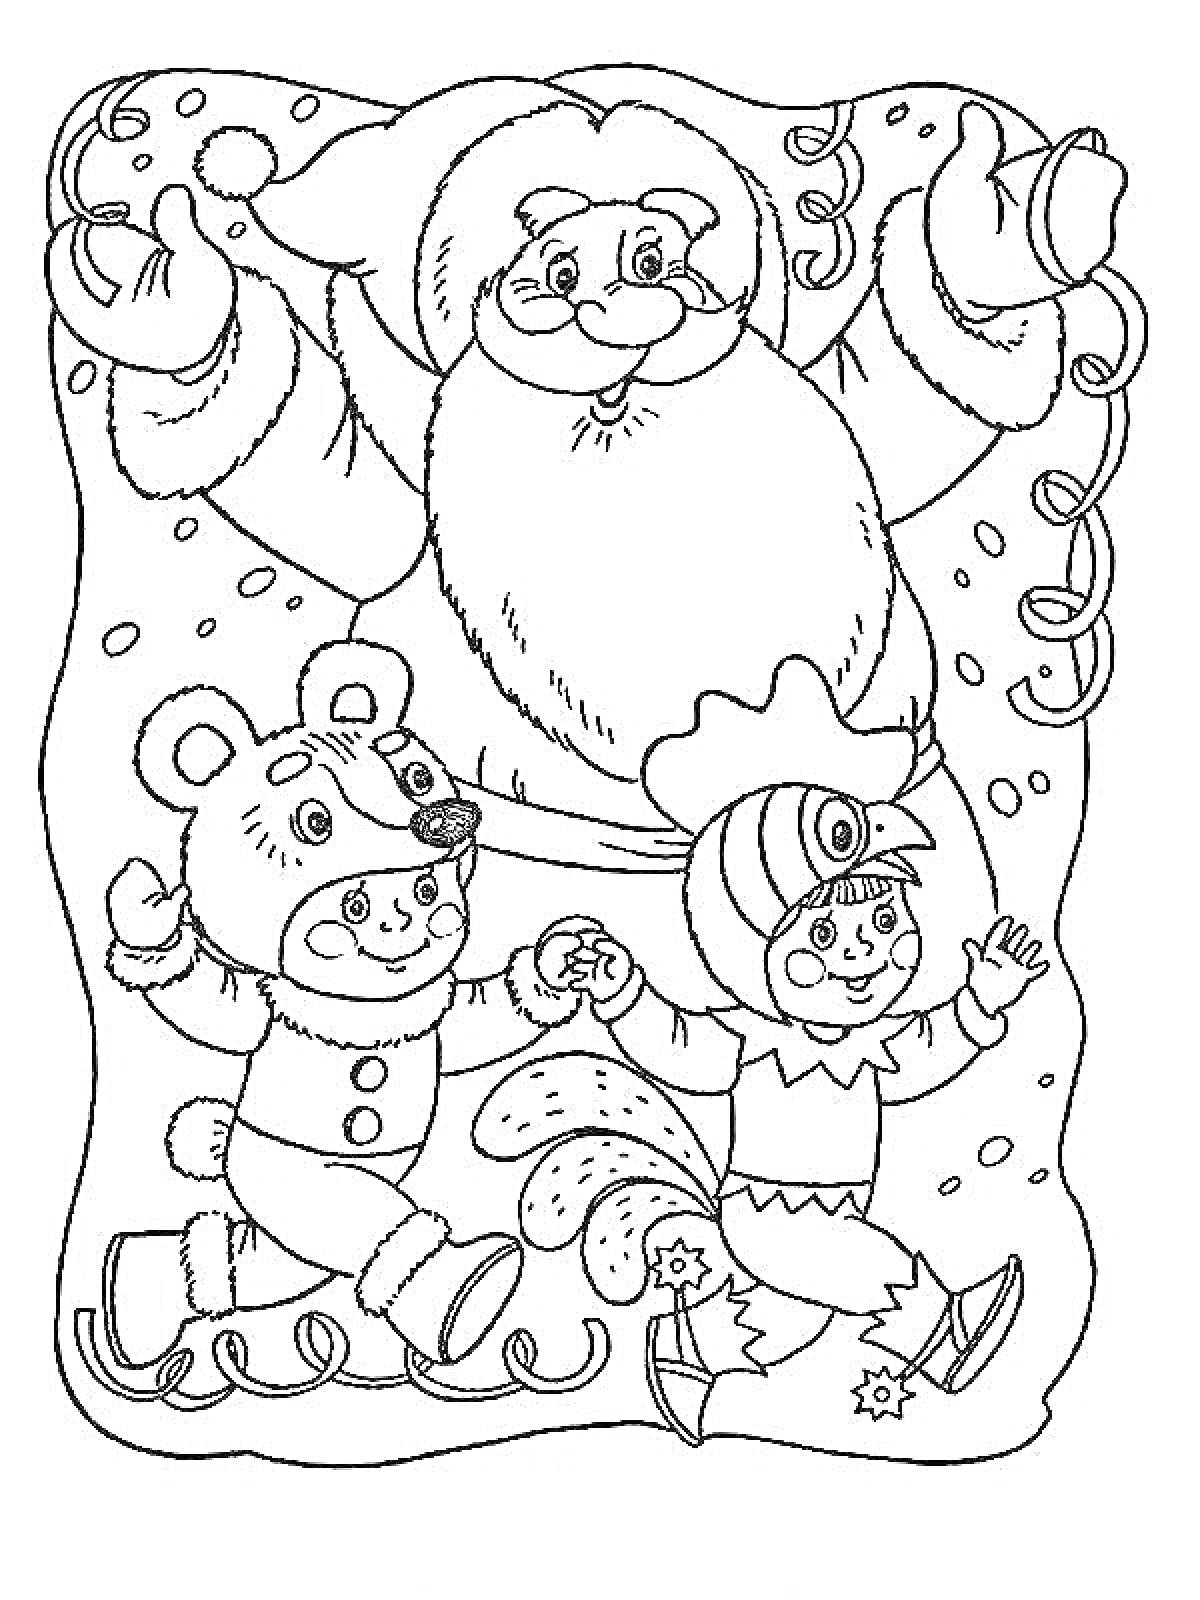 Раскраска Дед Мороз, медвежонок и эльф на новогоднем празднике в детском саду, окруженные серпантином и снежинками